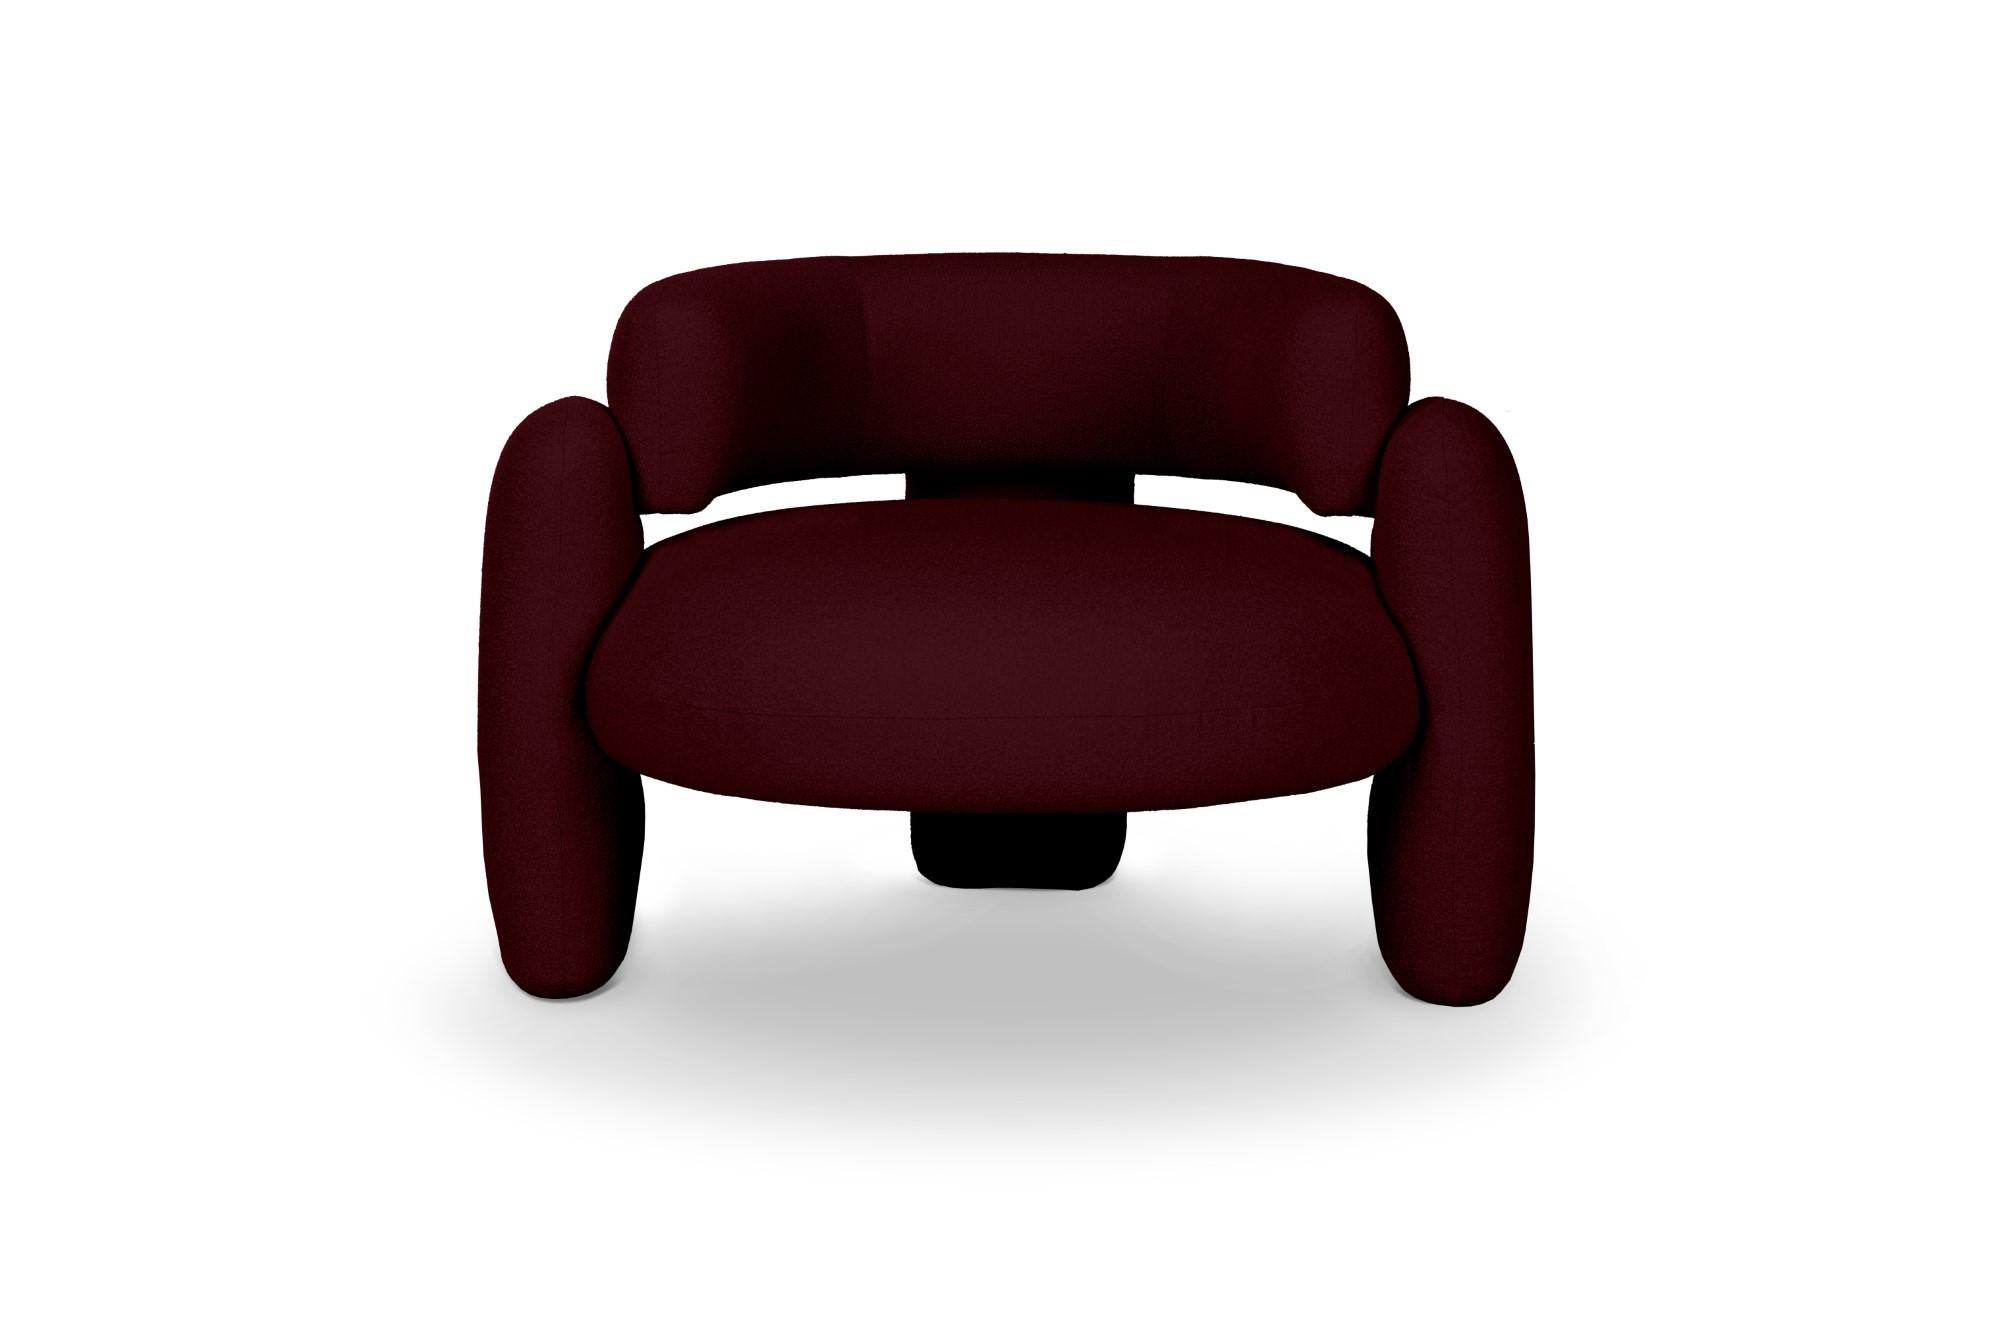 Embrace Lago Bordeaux-Sessel von Royal Stranger 
Abmessungen: B 96 x T 85 x H 68 cm.
Es sind verschiedene Farben und Ausführungen der Polsterung erhältlich. Bitte kontaktieren Sie uns.
MATERIALIEN: Polstermöbel.

Der Embrace Armchair ist eine